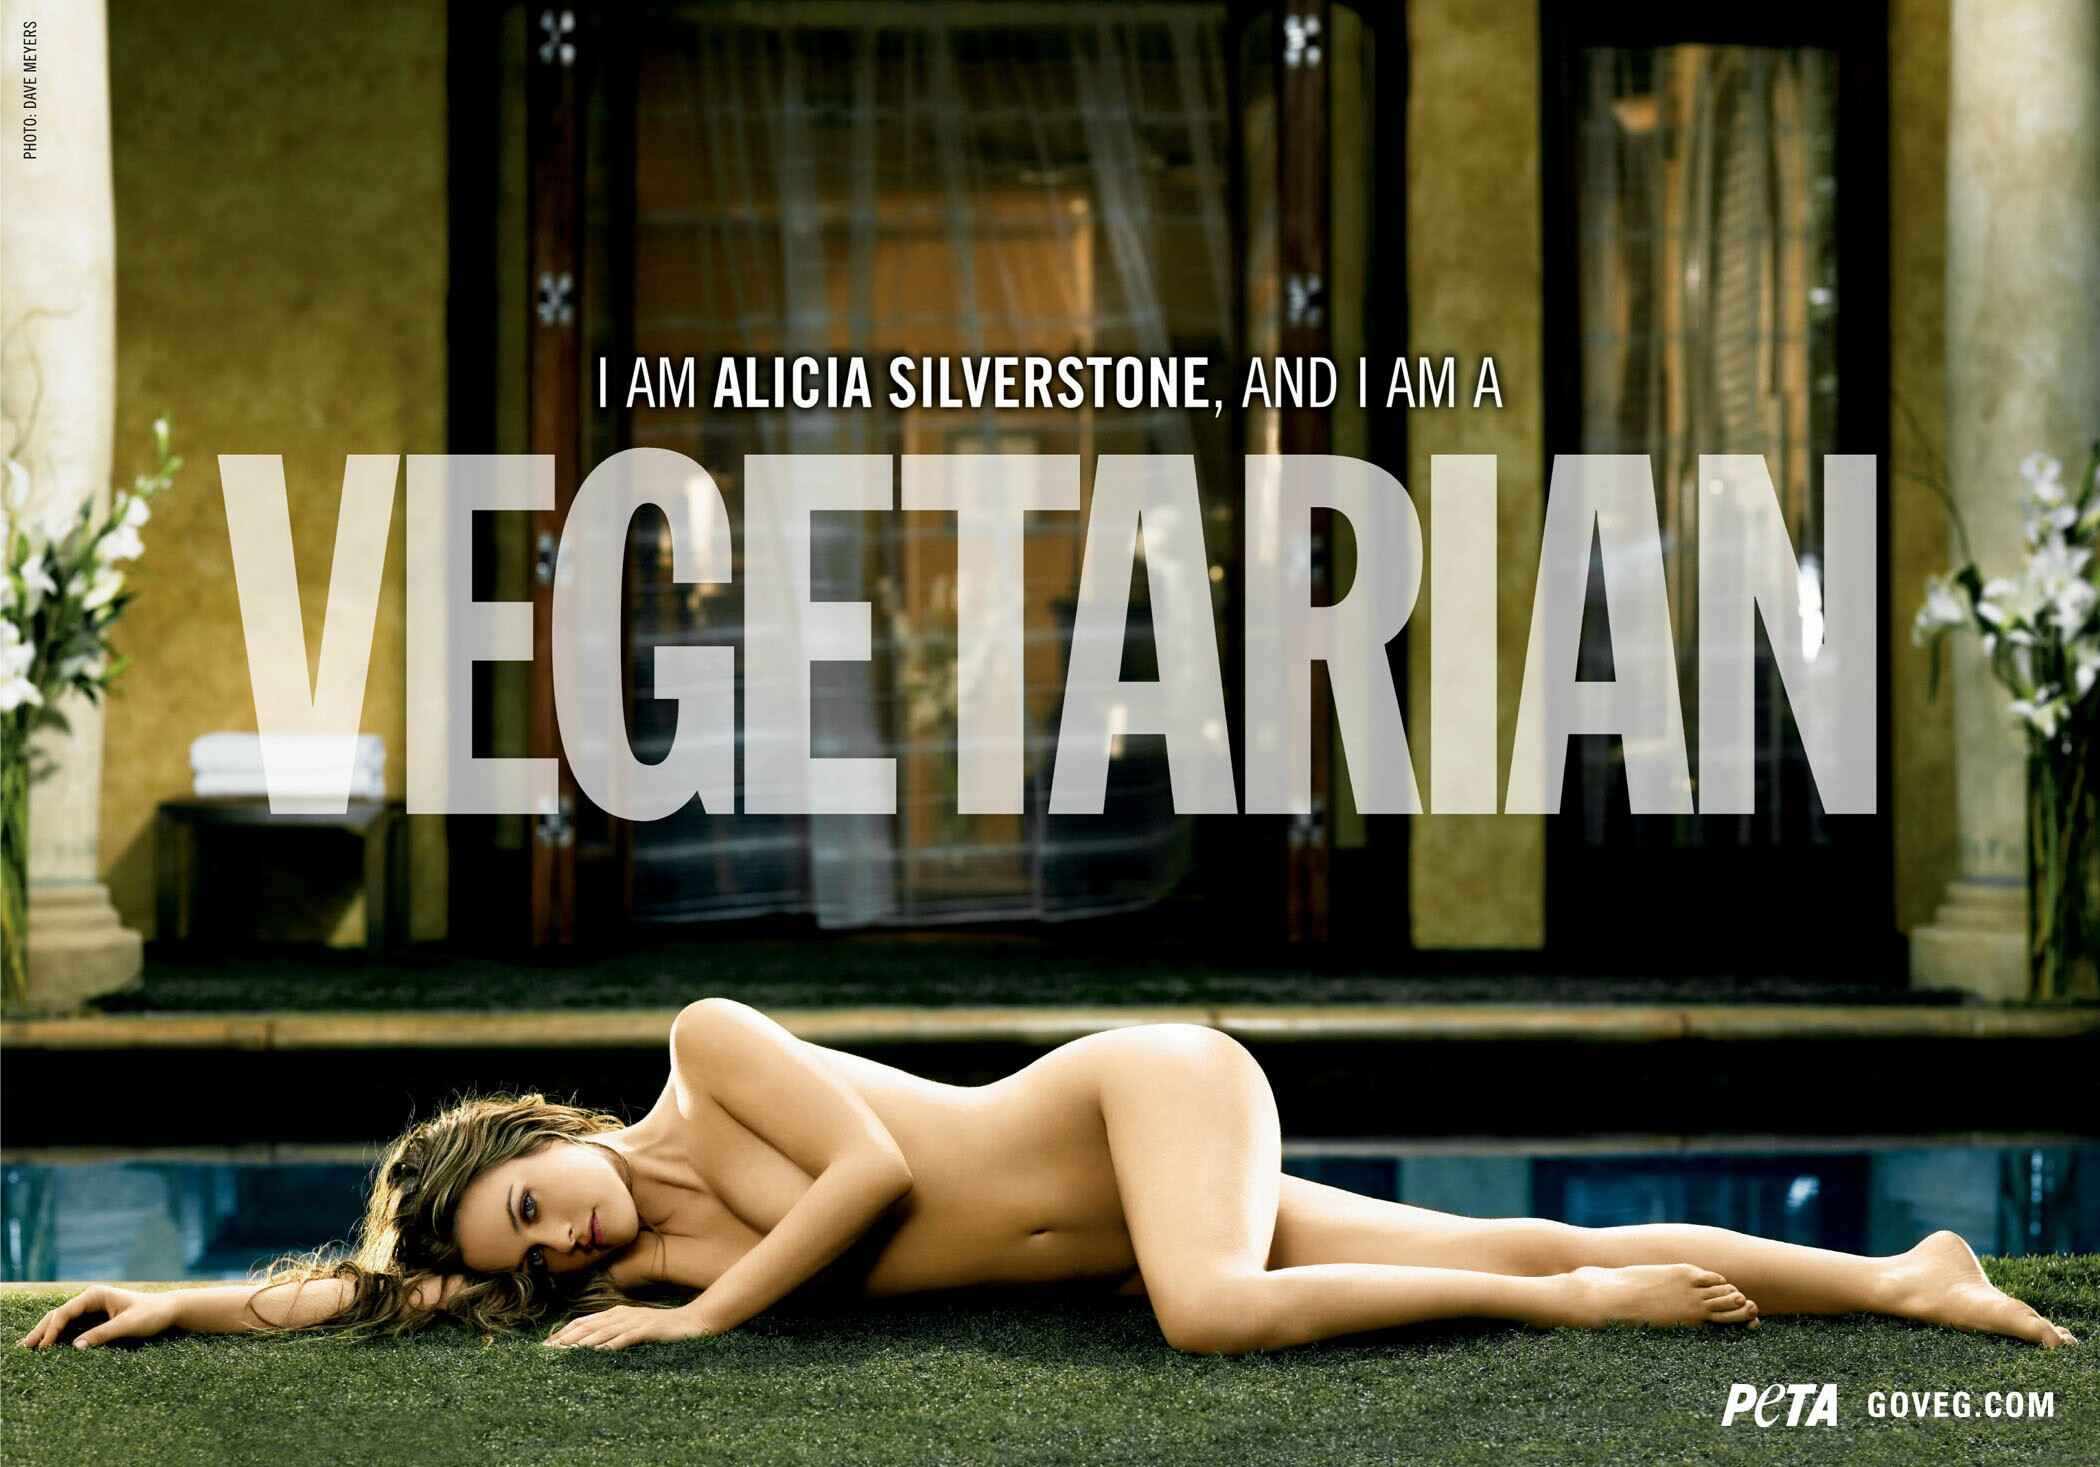 Goveg.com - Alicia Silverstone Commercial nude pics.